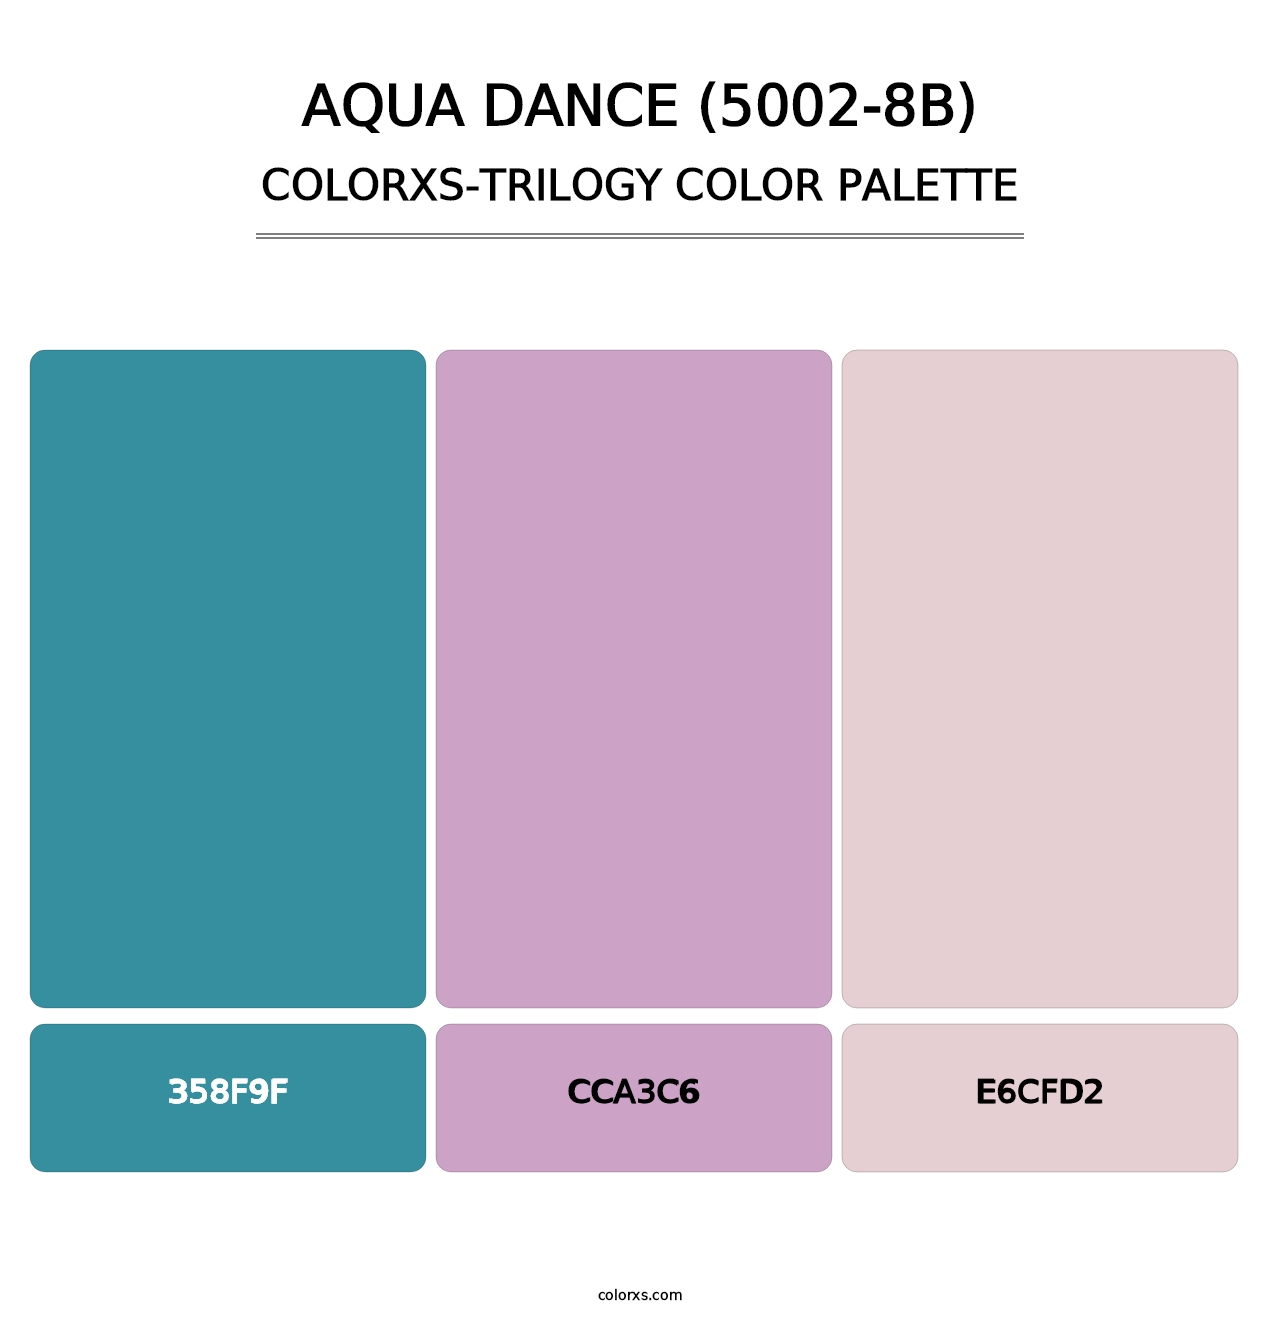 Aqua Dance (5002-8B) - Colorxs Trilogy Palette